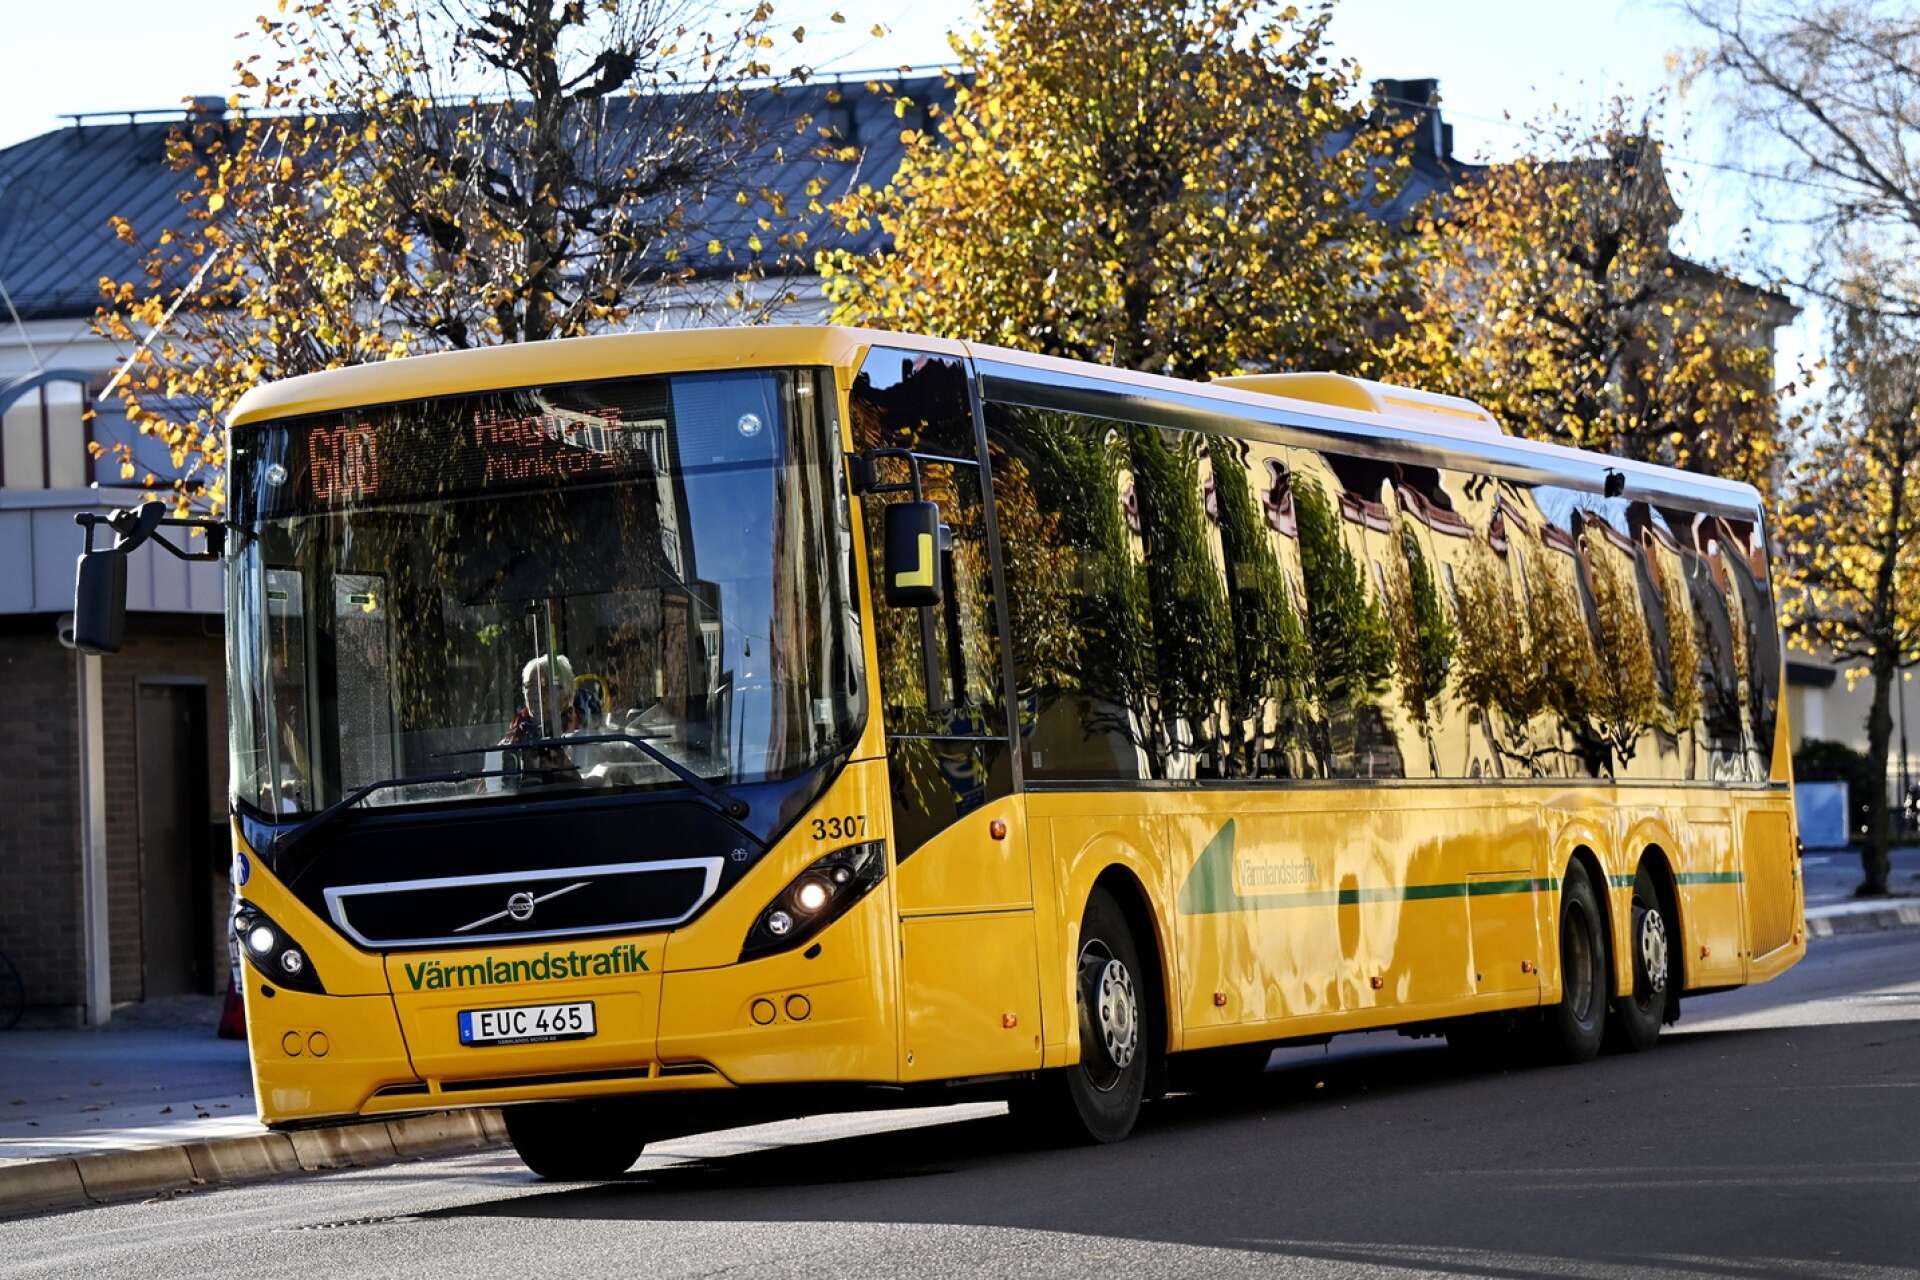 Är det bakom ratten på en sådan här buss som man kan hitta Flingan i framtiden? 